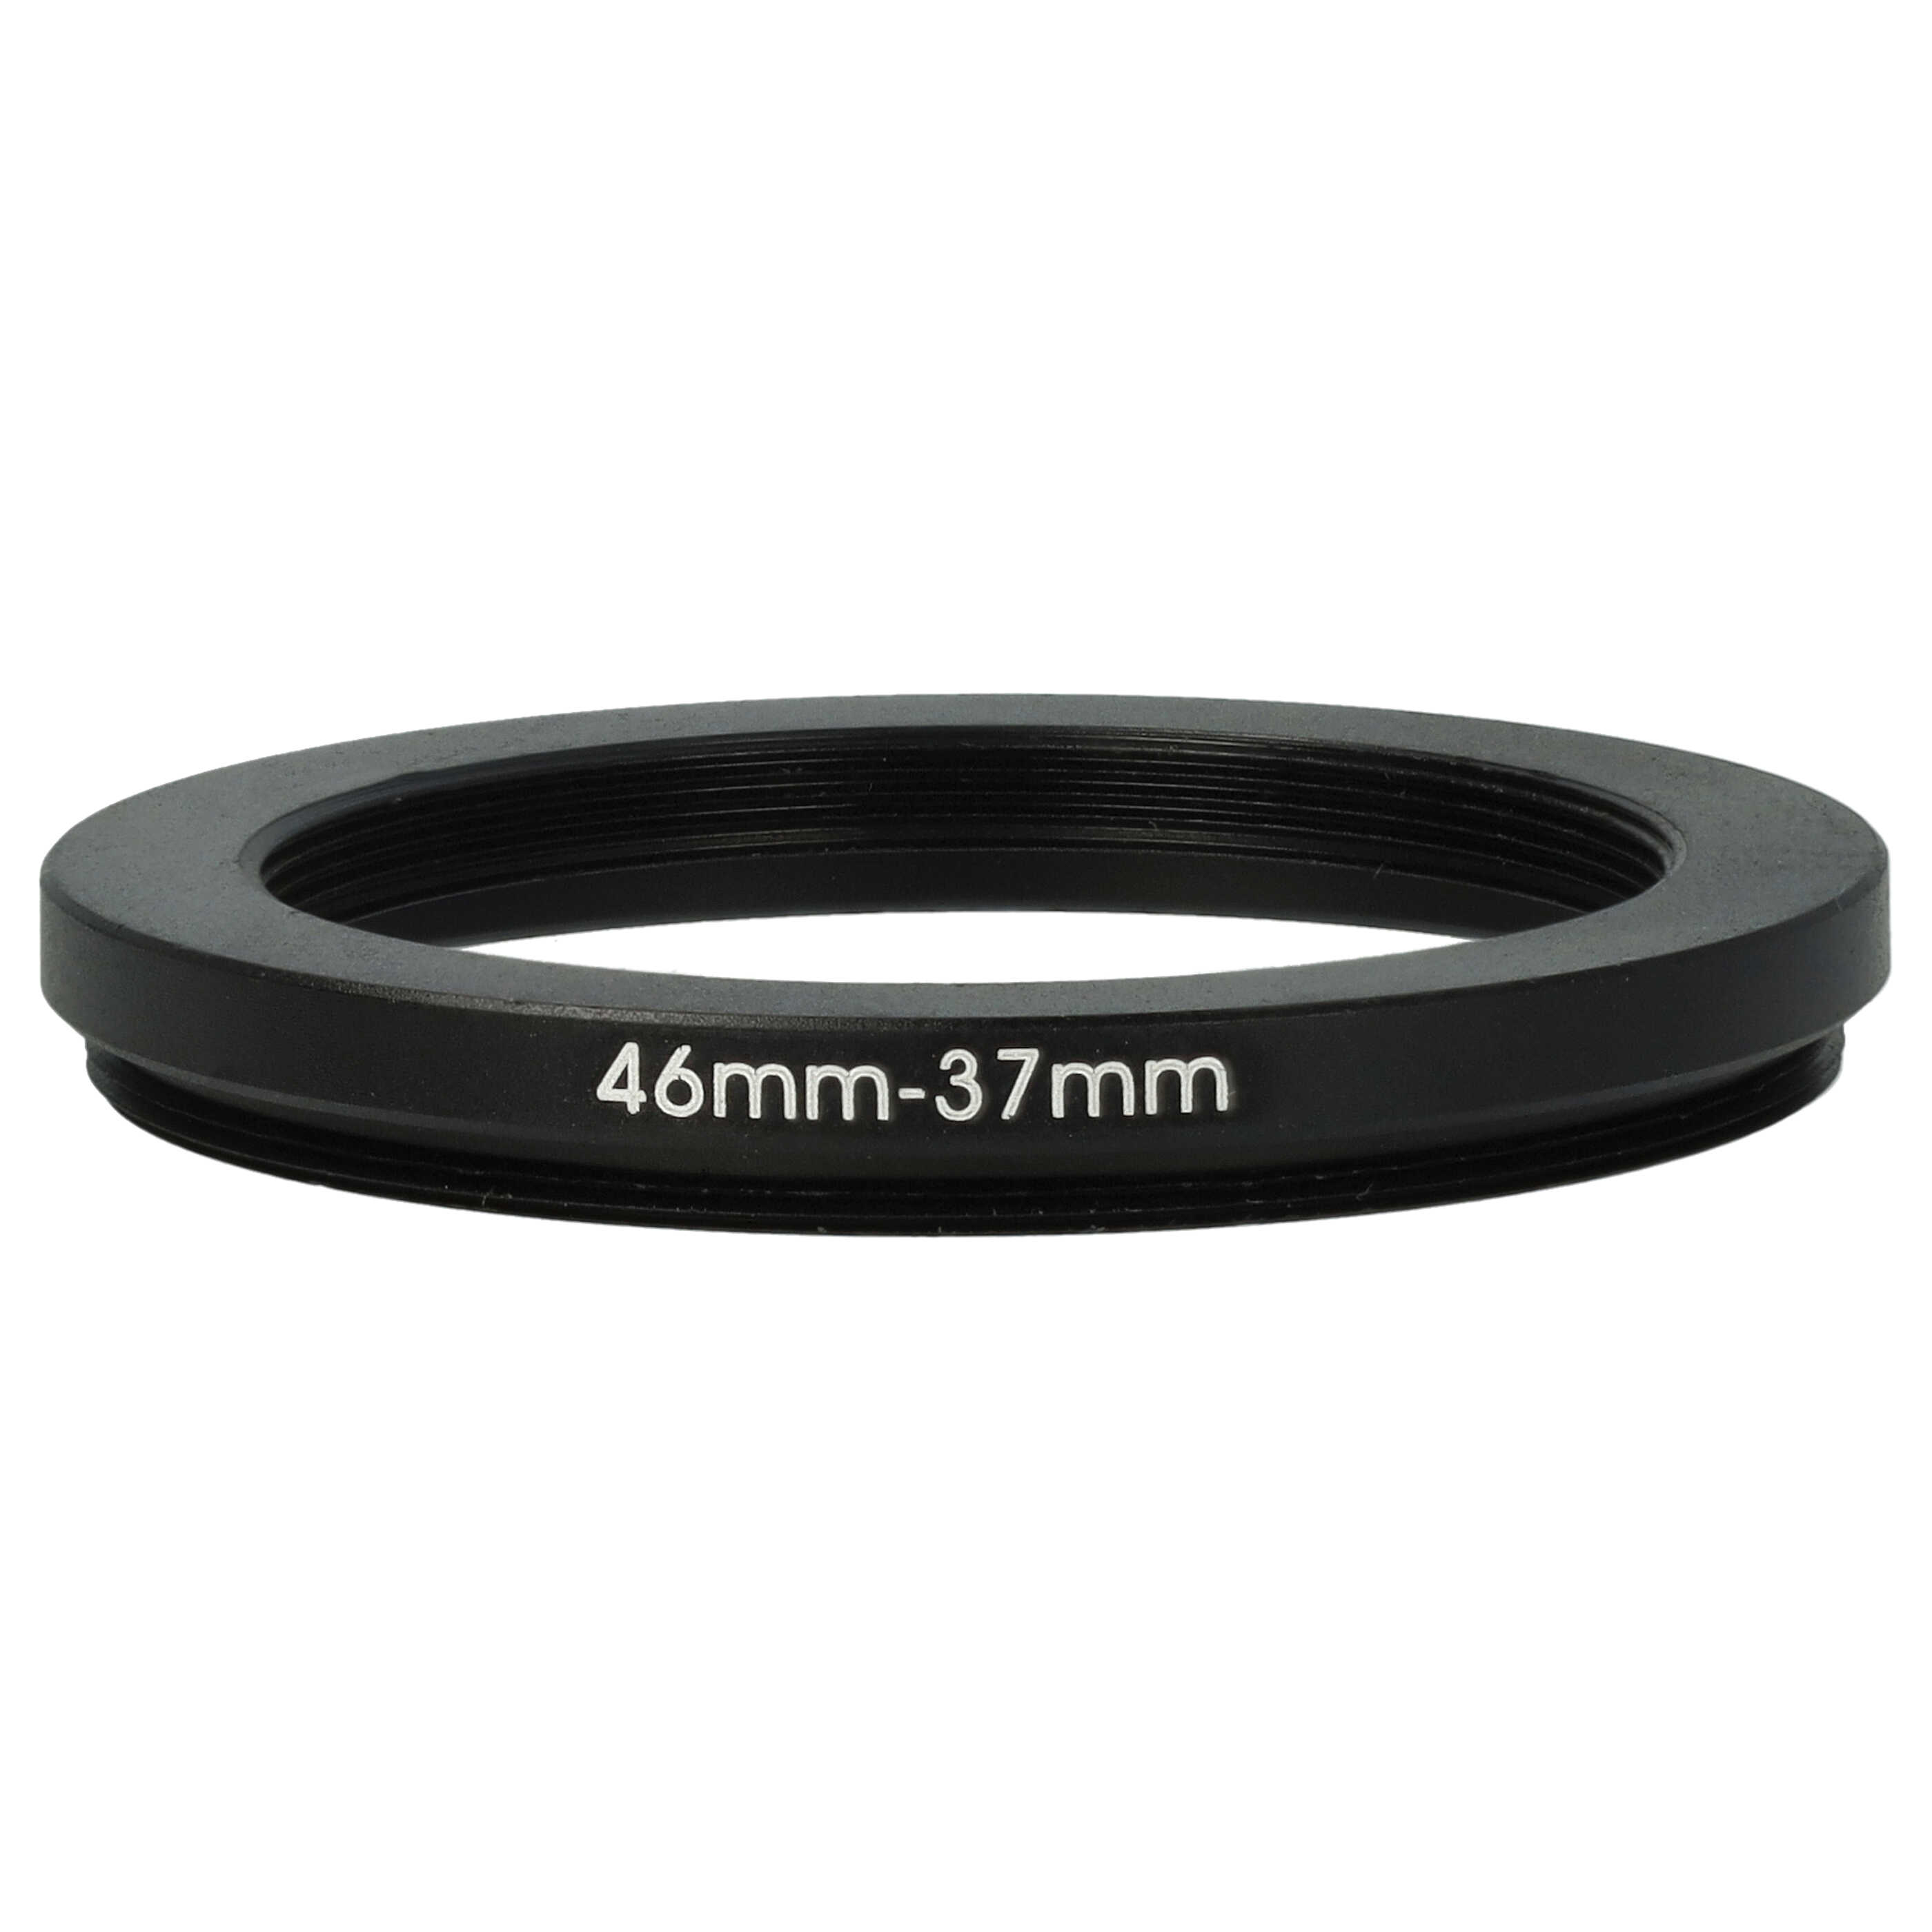 Anillo adaptador Step Down de 46 mm a 37 mm para objetivo de la cámara - Adaptador de filtro, metal, negro